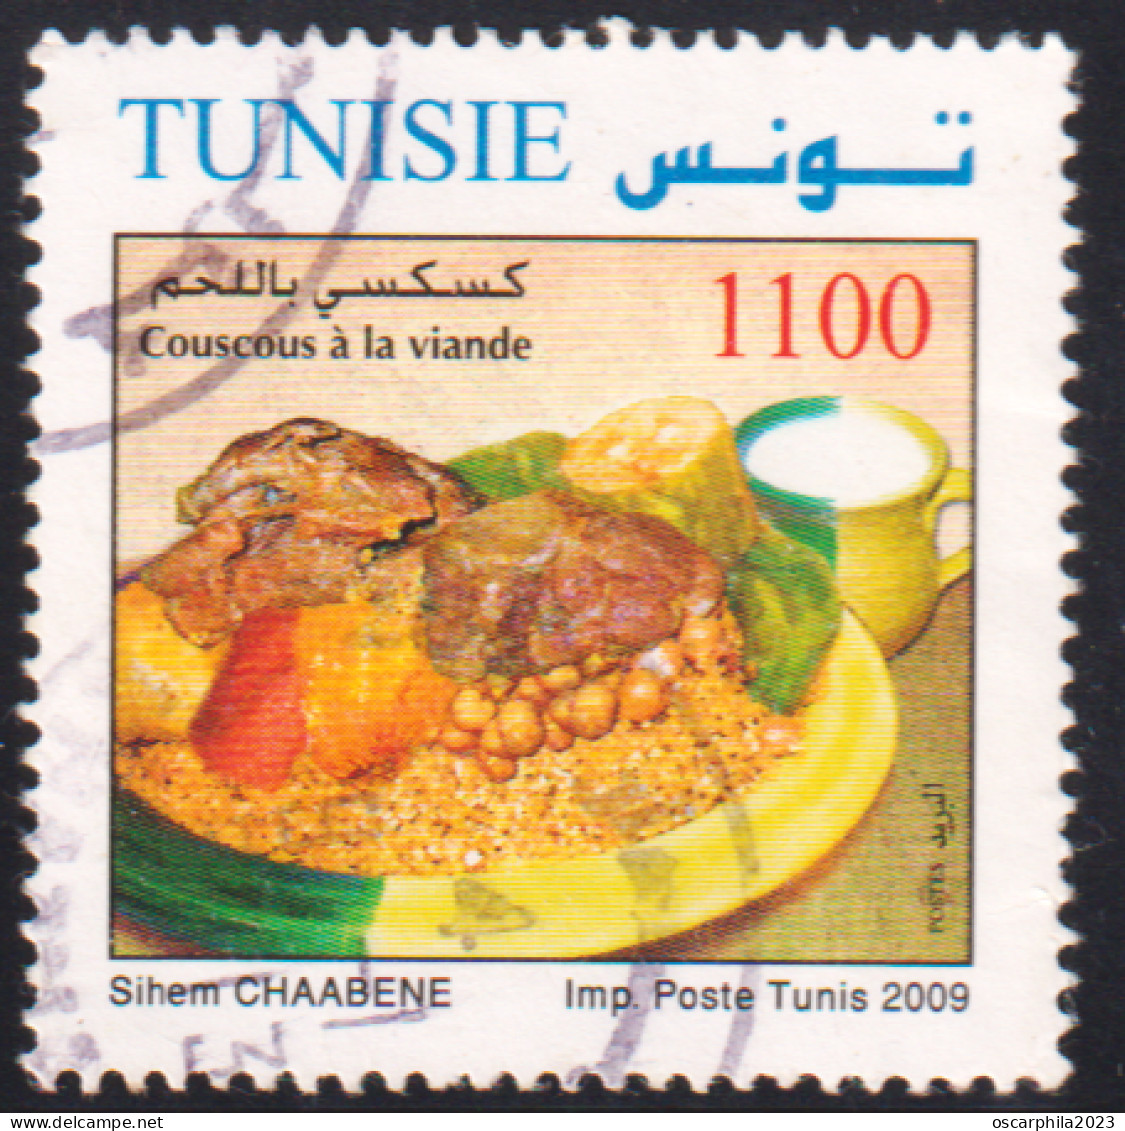 2009- Tunisie - Y&T 1650-  Plats De Tunisie - Couscous à La Viande - OBLI - Food